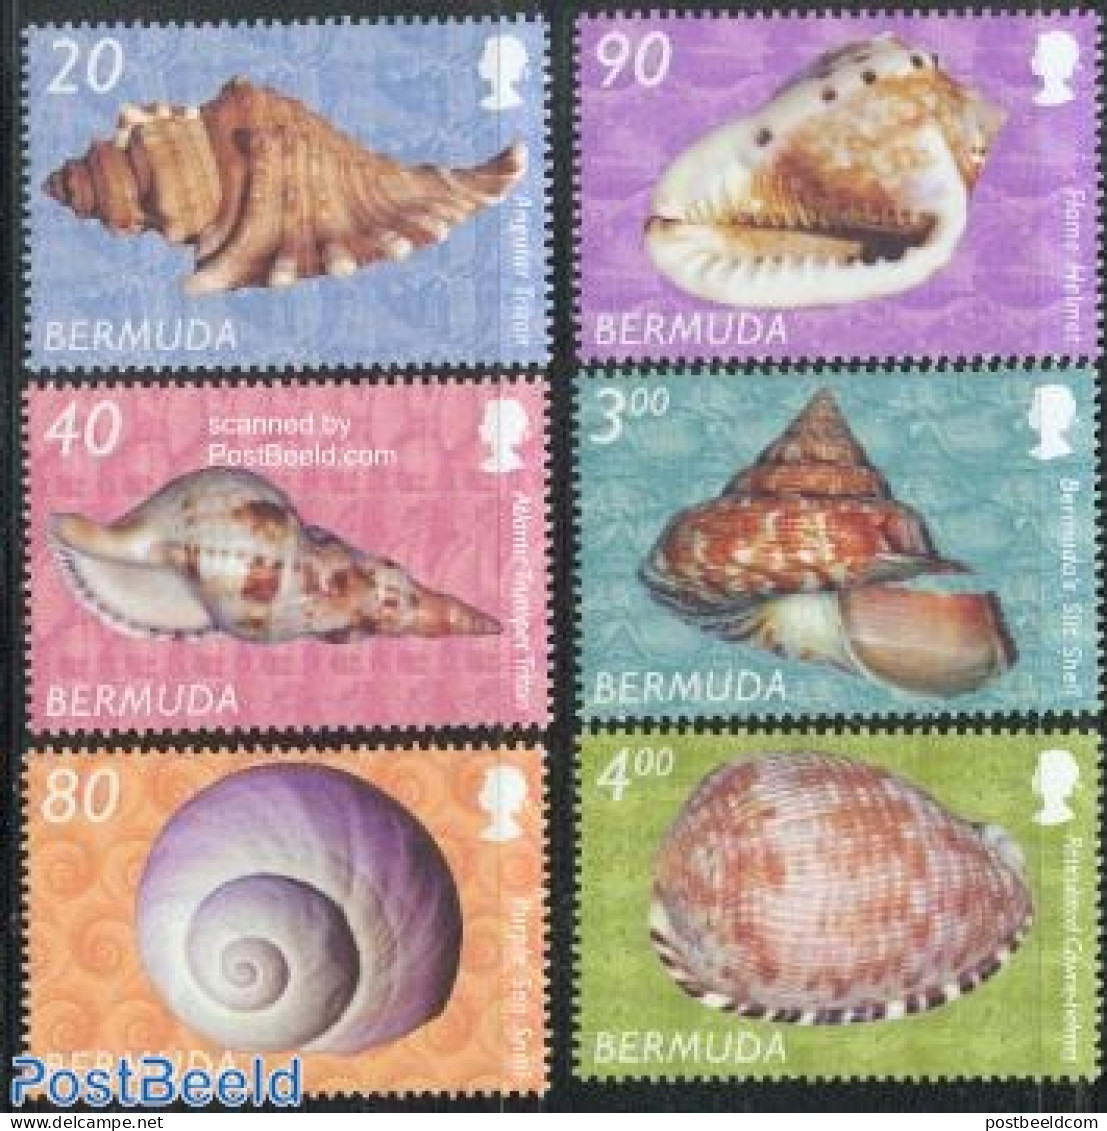 Bermuda 2003 Definitives, Shells 6v, Mint NH, Nature - Shells & Crustaceans - Marine Life